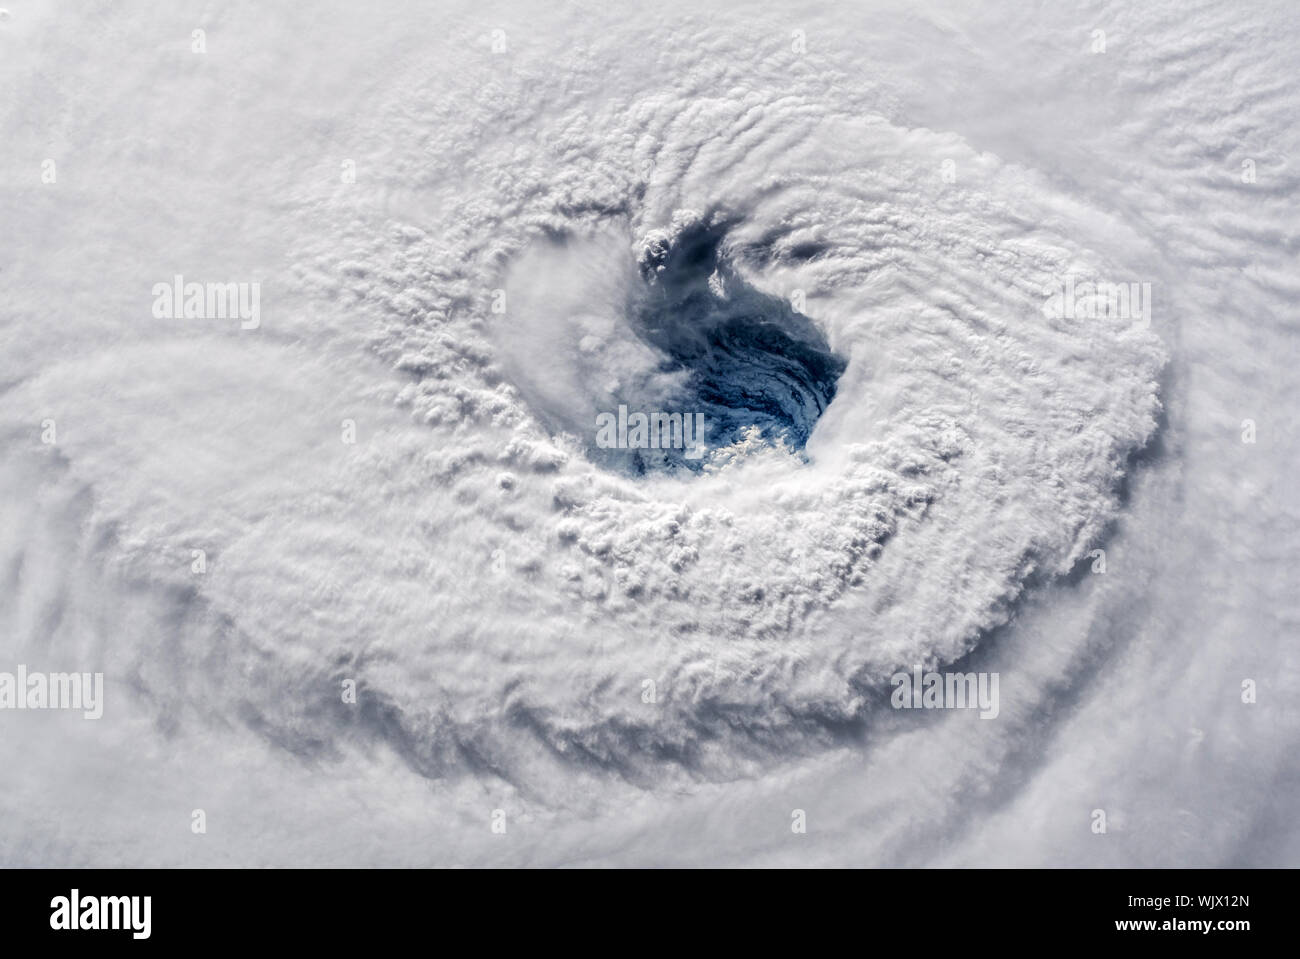 La NASA La Station spatiale internationale (ISS) vue de l'oeil de l'ouragan Florence photographié par l'astronaute Alex Gerst le 12 septembre 2018. Banque D'Images